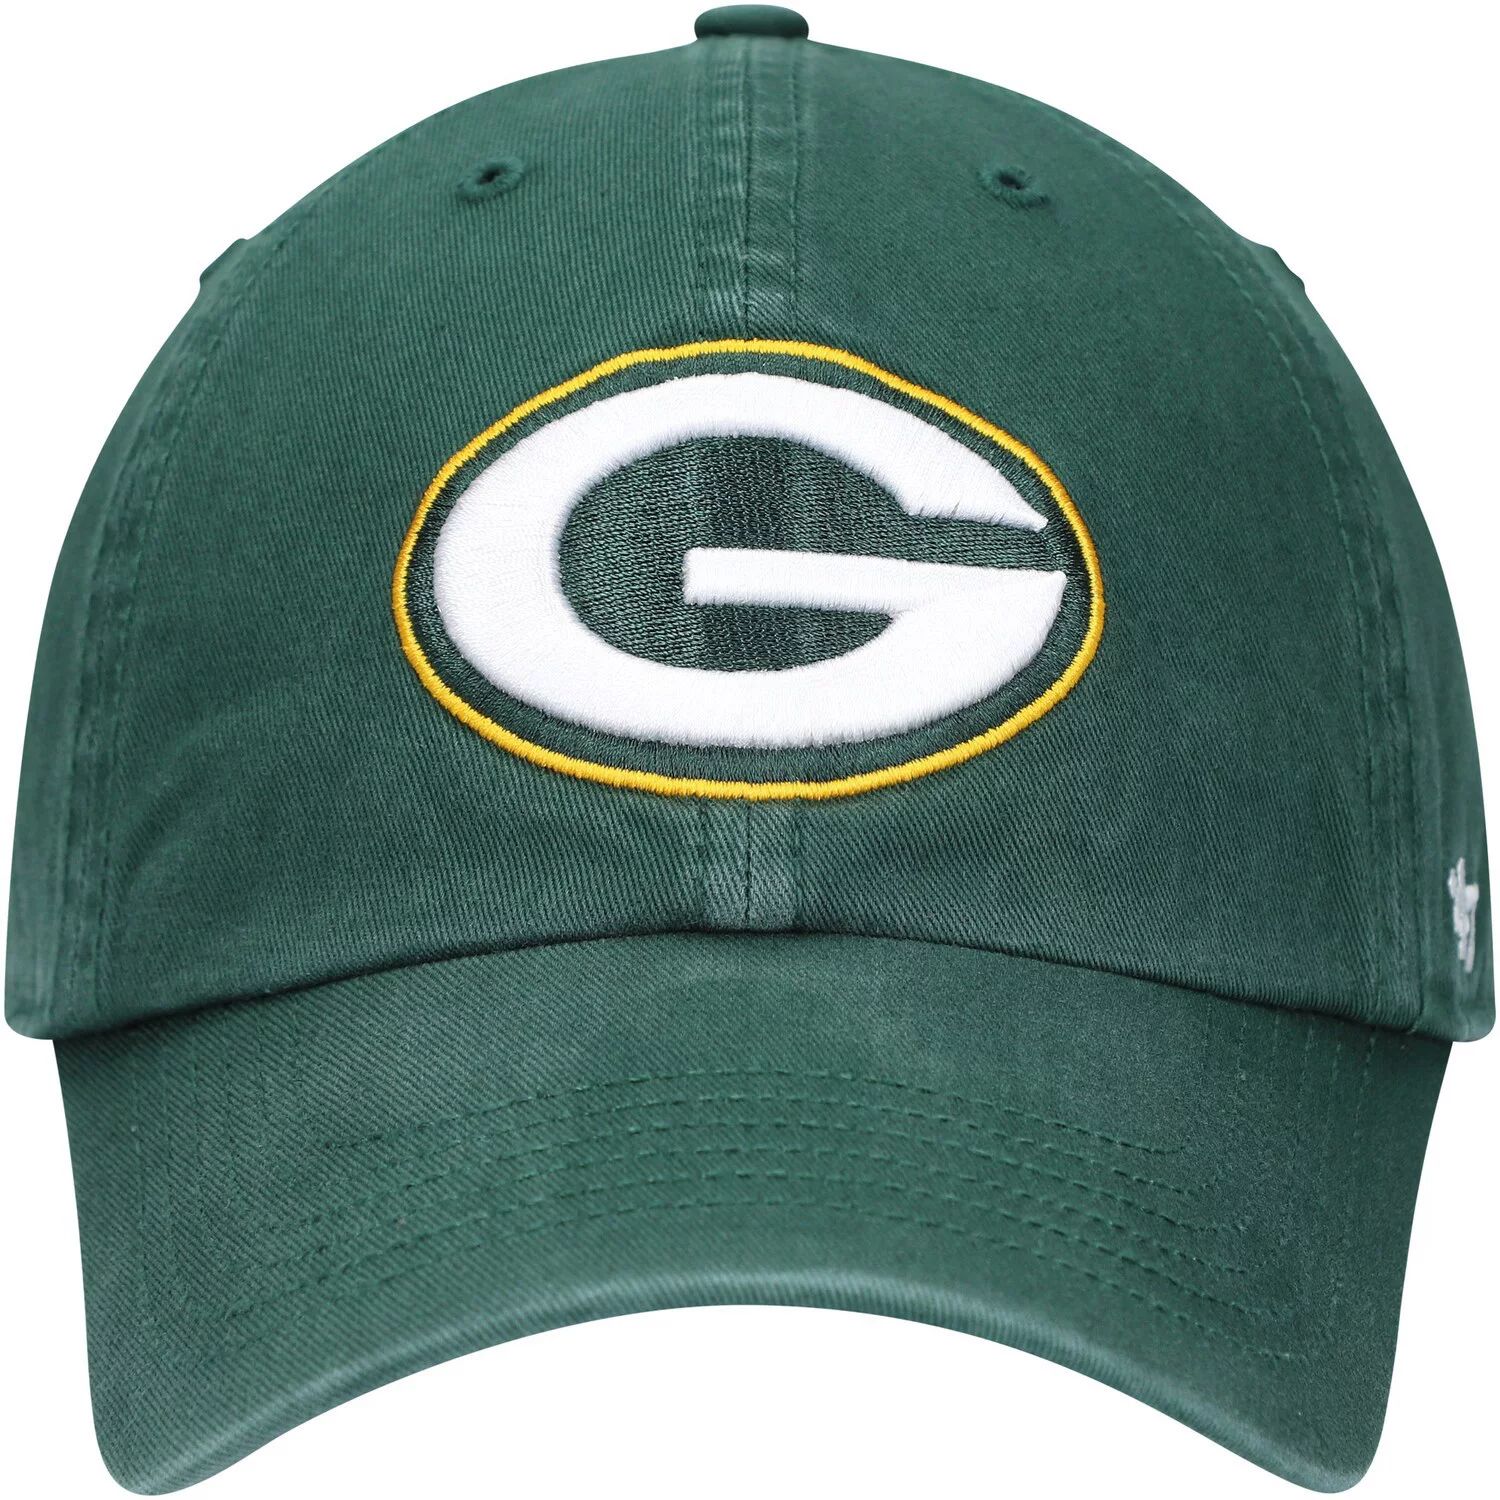 Мужская кепка с логотипом Green Bay Packers '47 Green, франшиза